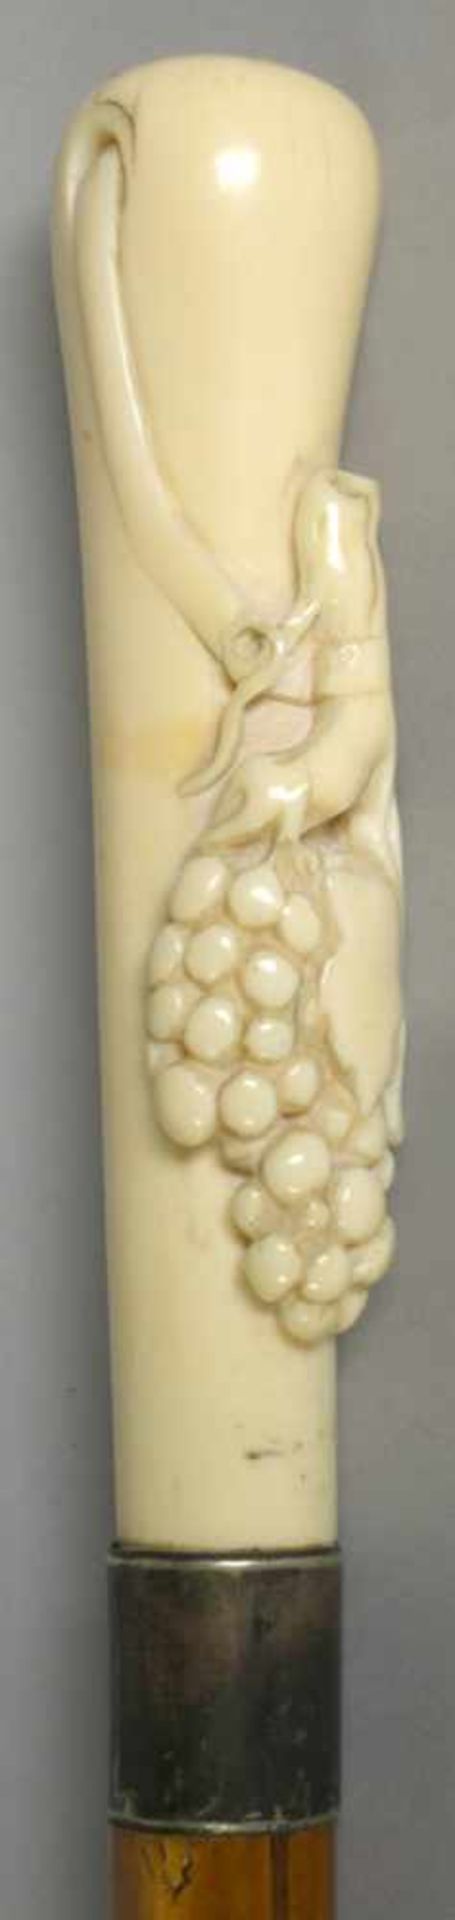 Spazierstock, um 1900, Elfenbeingriff mit reliefplastischem Weintraubenhenkel dekoriert,schöne - Bild 3 aus 4